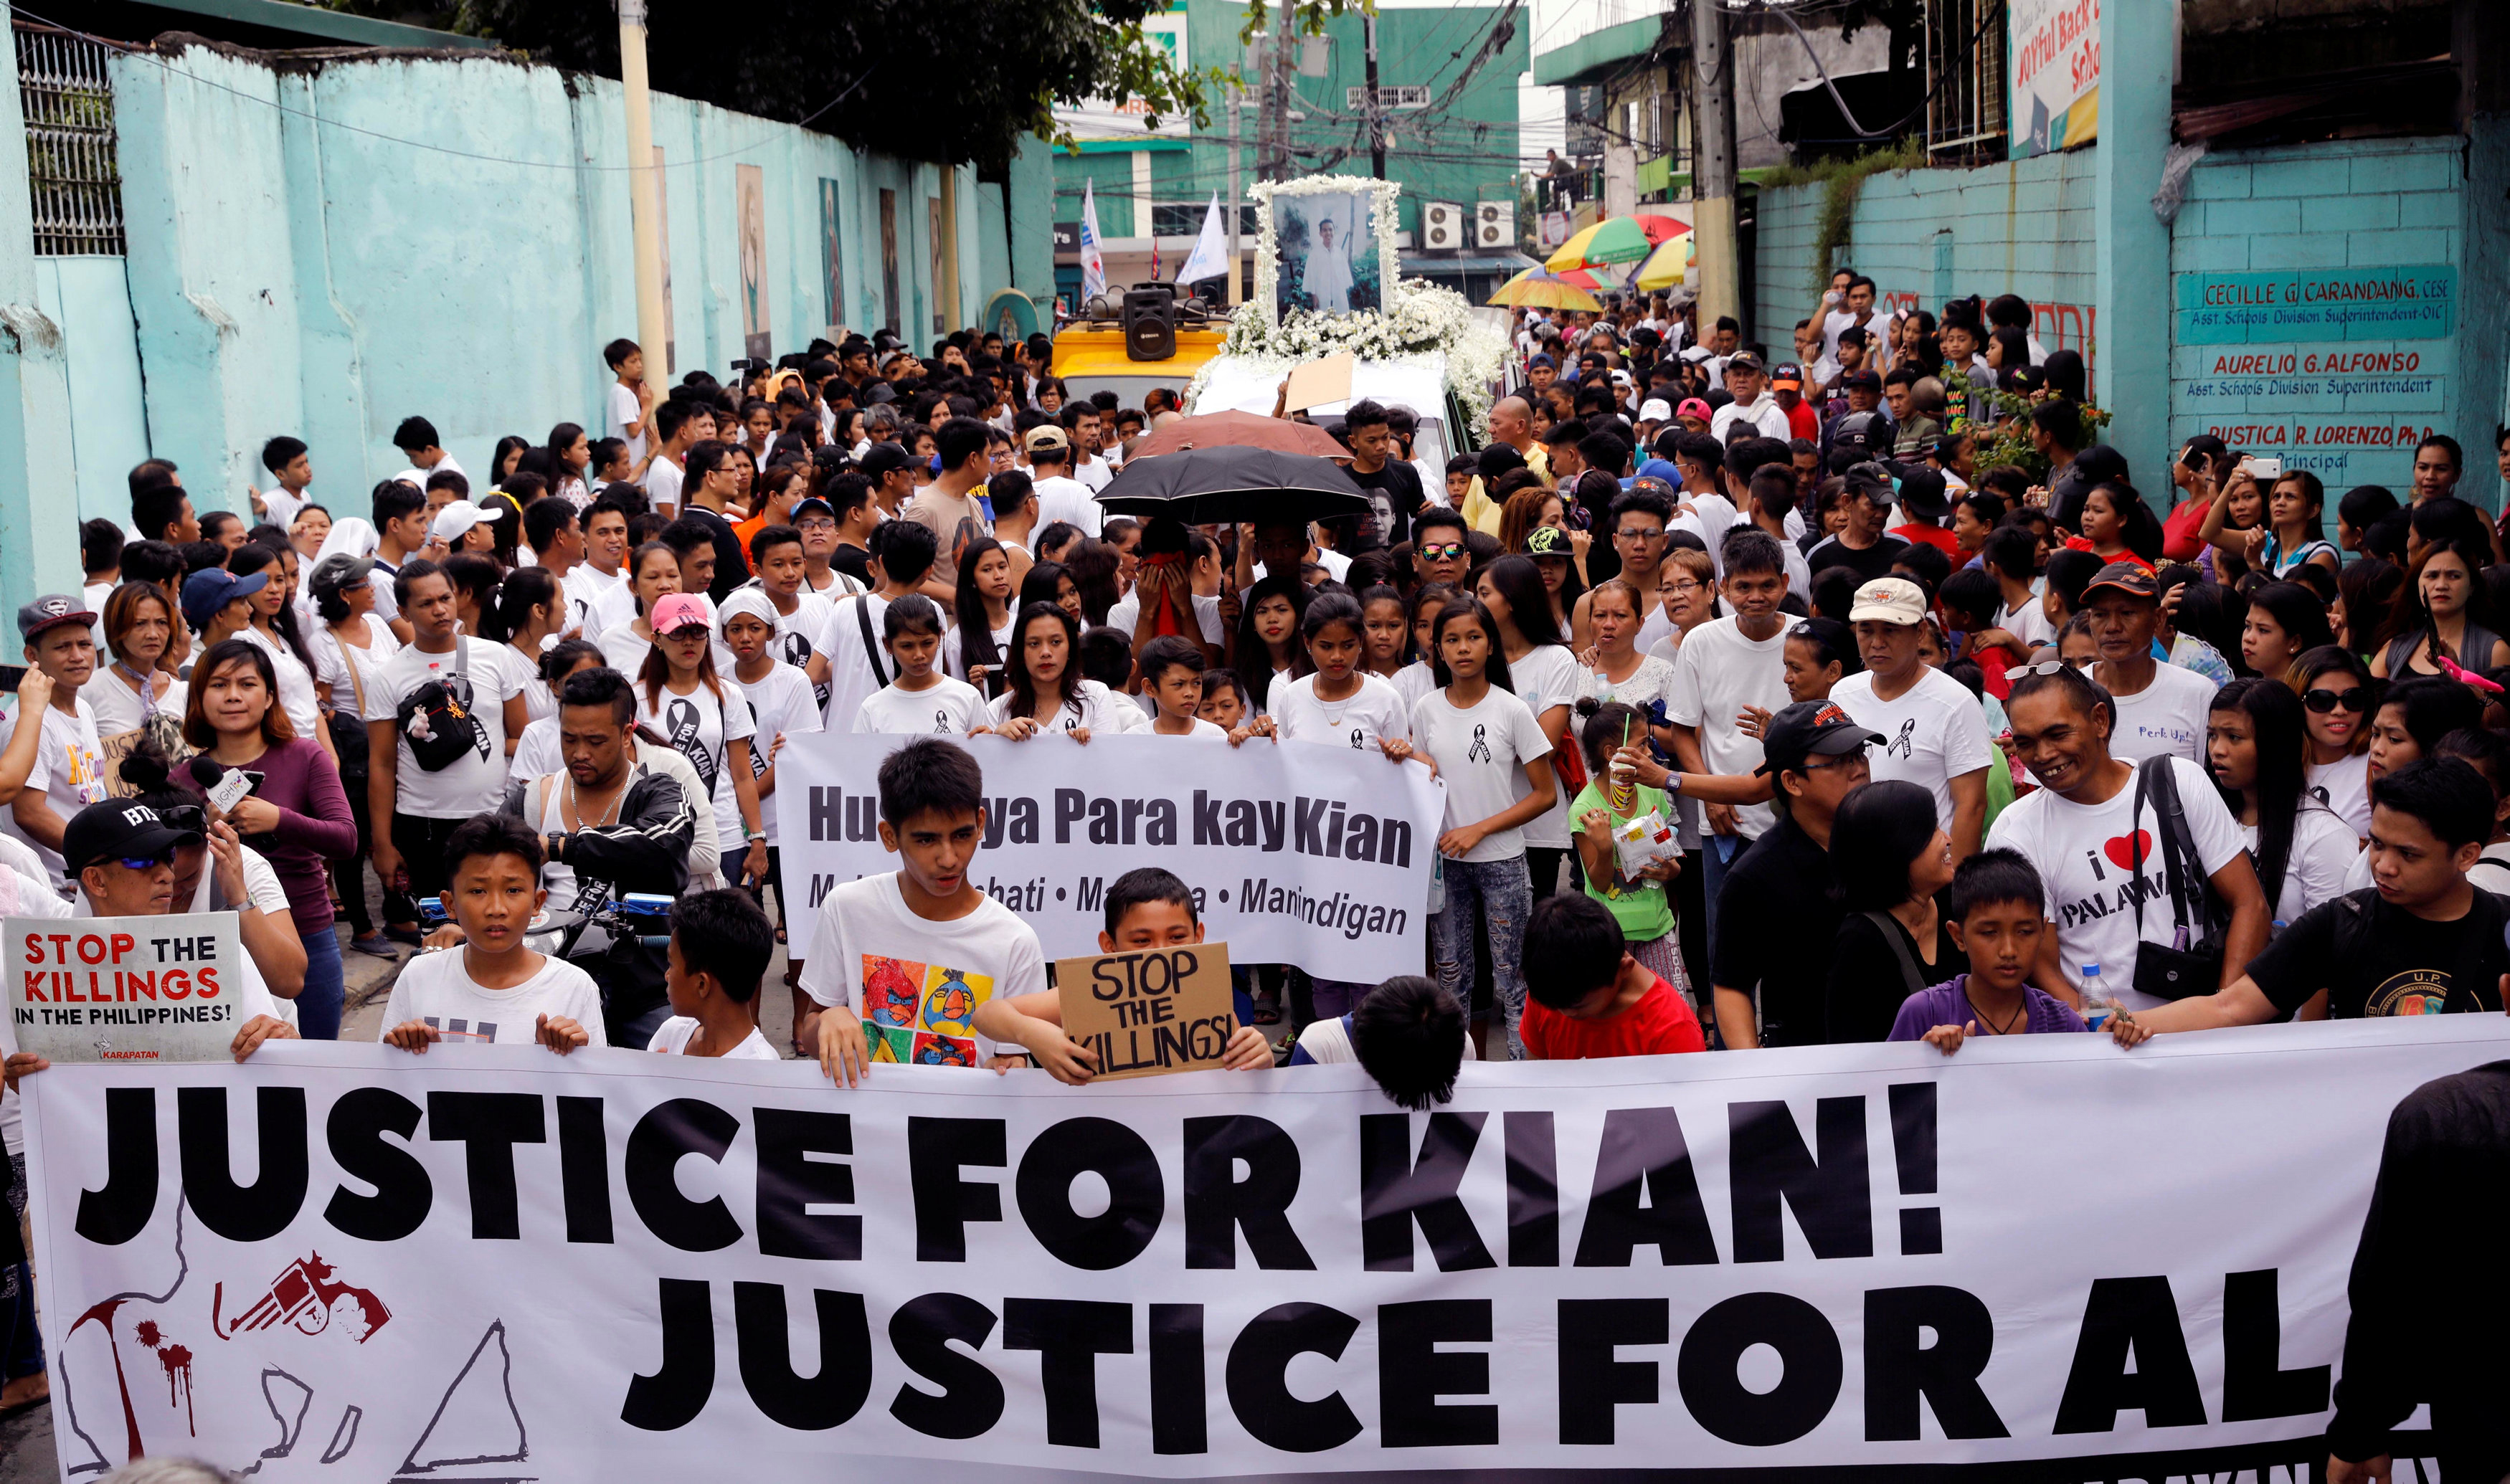 Miles de personas han muerto en manos de la policía de Filipinas que actúa fuera de la ley, por orden de Duterte que demuestra desprecio por los derechos humanos y por las personas que los defienden.